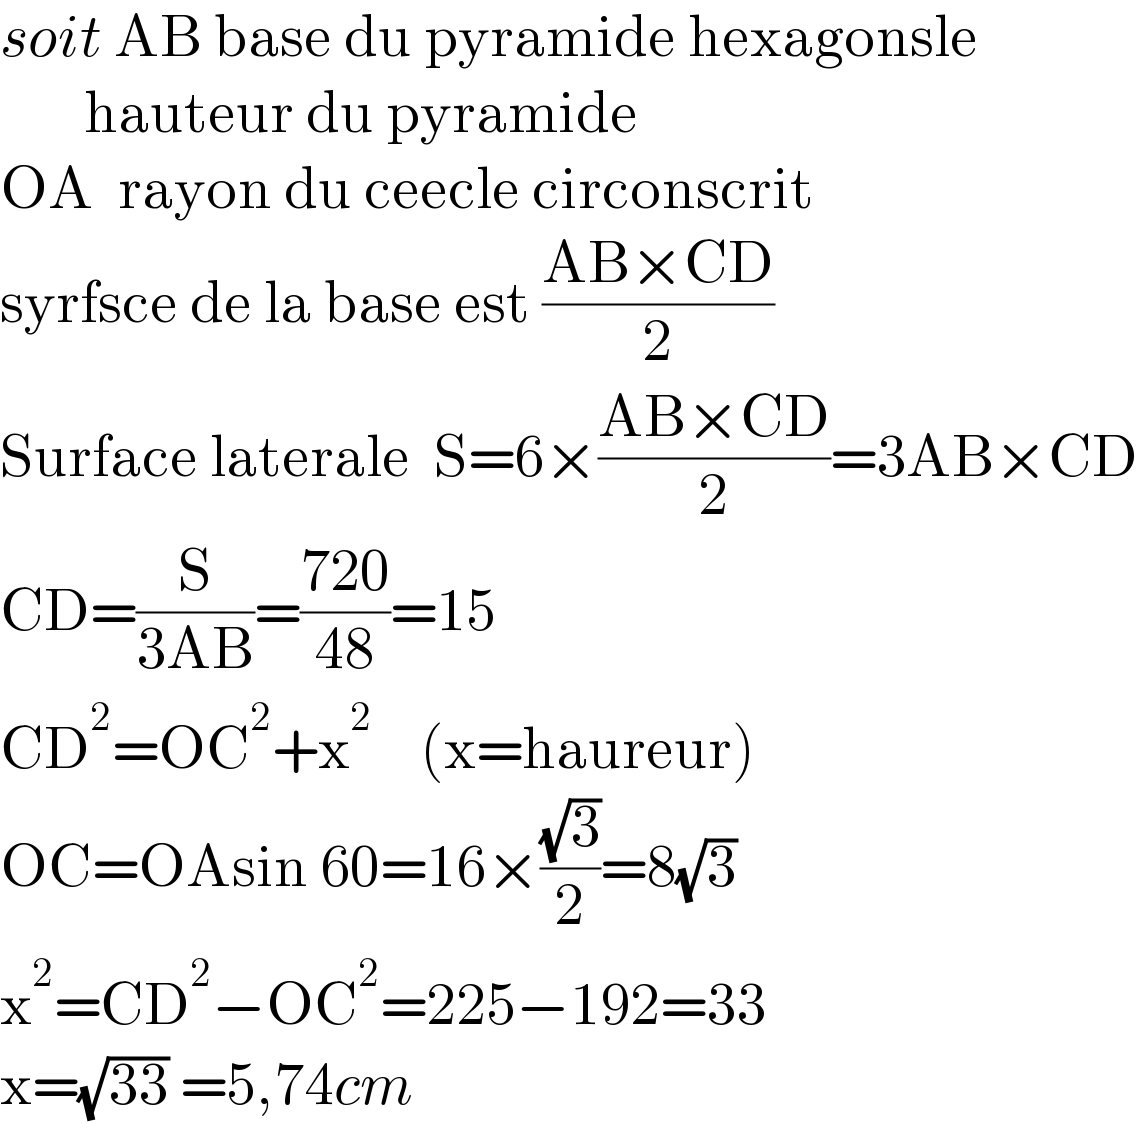 soit AB base du pyramide hexagonsle         hauteur du pyramide  OA  rayon du ceecle circonscrit  syrfsce de la base est ((AB×CD)/2)      Surface laterale  S=6×((AB×CD)/2)=3AB×CD  CD=(S/(3AB))=((720)/(48))=15  CD^2 =OC^2 +x^2     (x=haureur)  OC=OAsin 60=16×((√3)/2)=8(√3)  x^2 =CD^2 −OC^2 =225−192=33  x=(√(33)) =5,74cm  